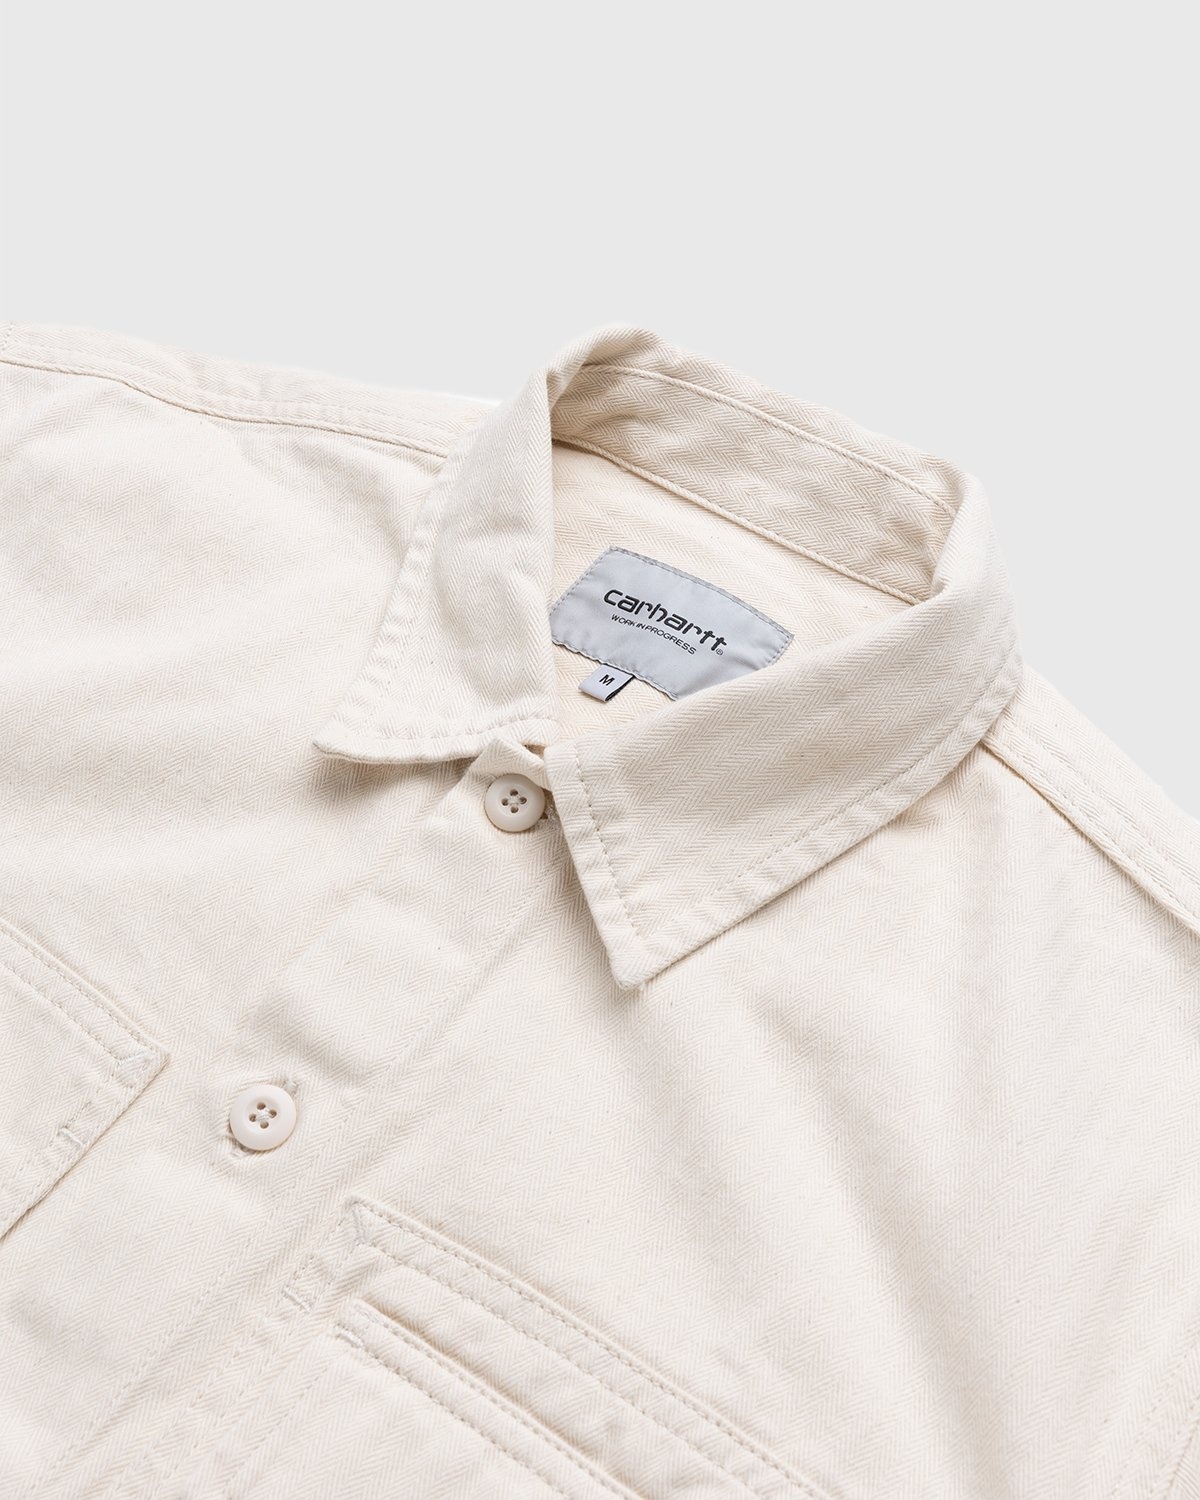 Carhartt WIP – Charter Shirt Natural - Longsleeve Shirts - Beige - Image 3